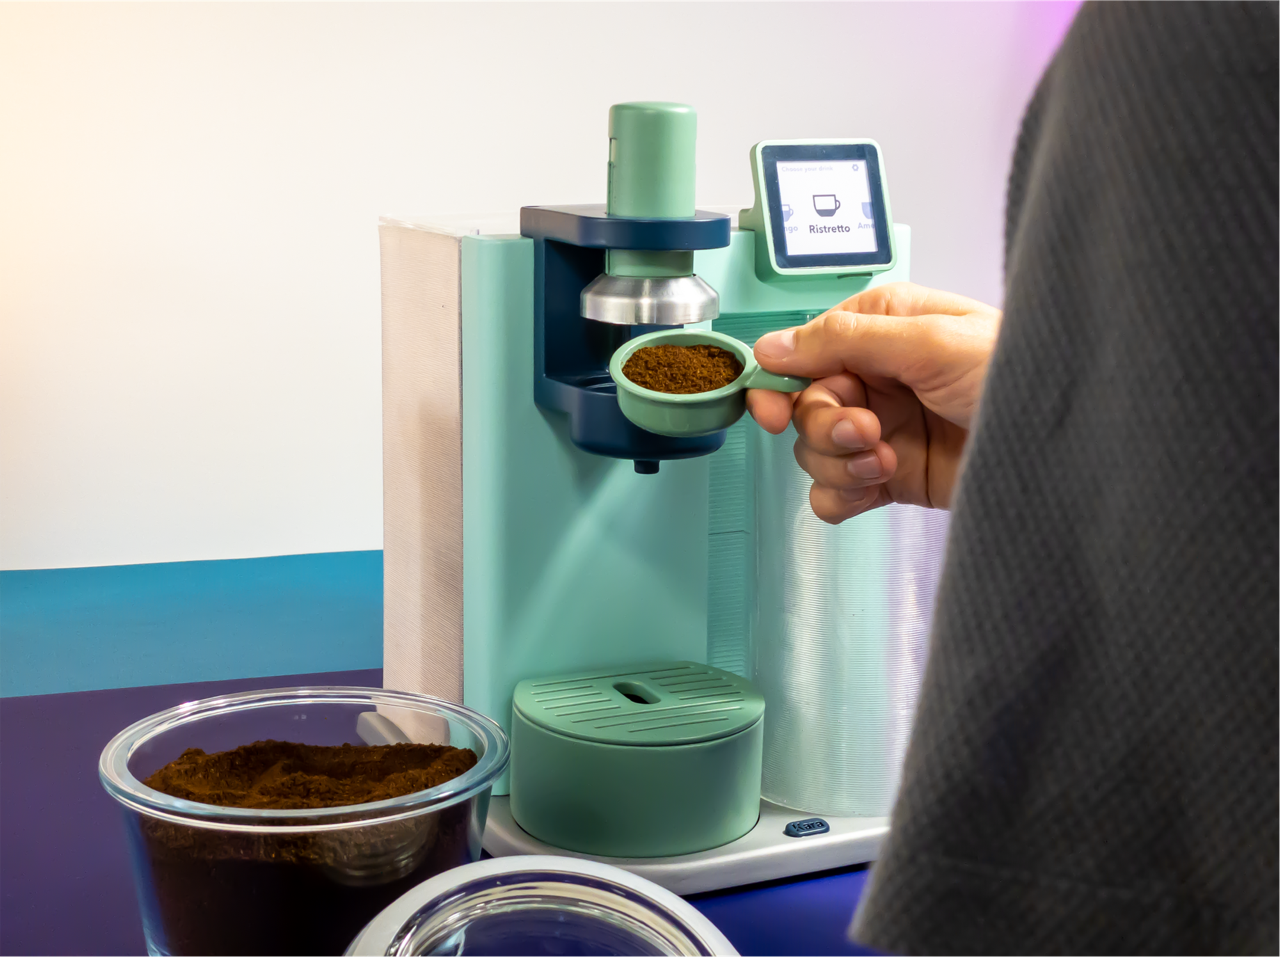 https://cimg0.ibsrv.net/cimg/www.dornob.com/1280x960_85/916/kara-sustainable-repairable-modular-coffee-machine-684916.png